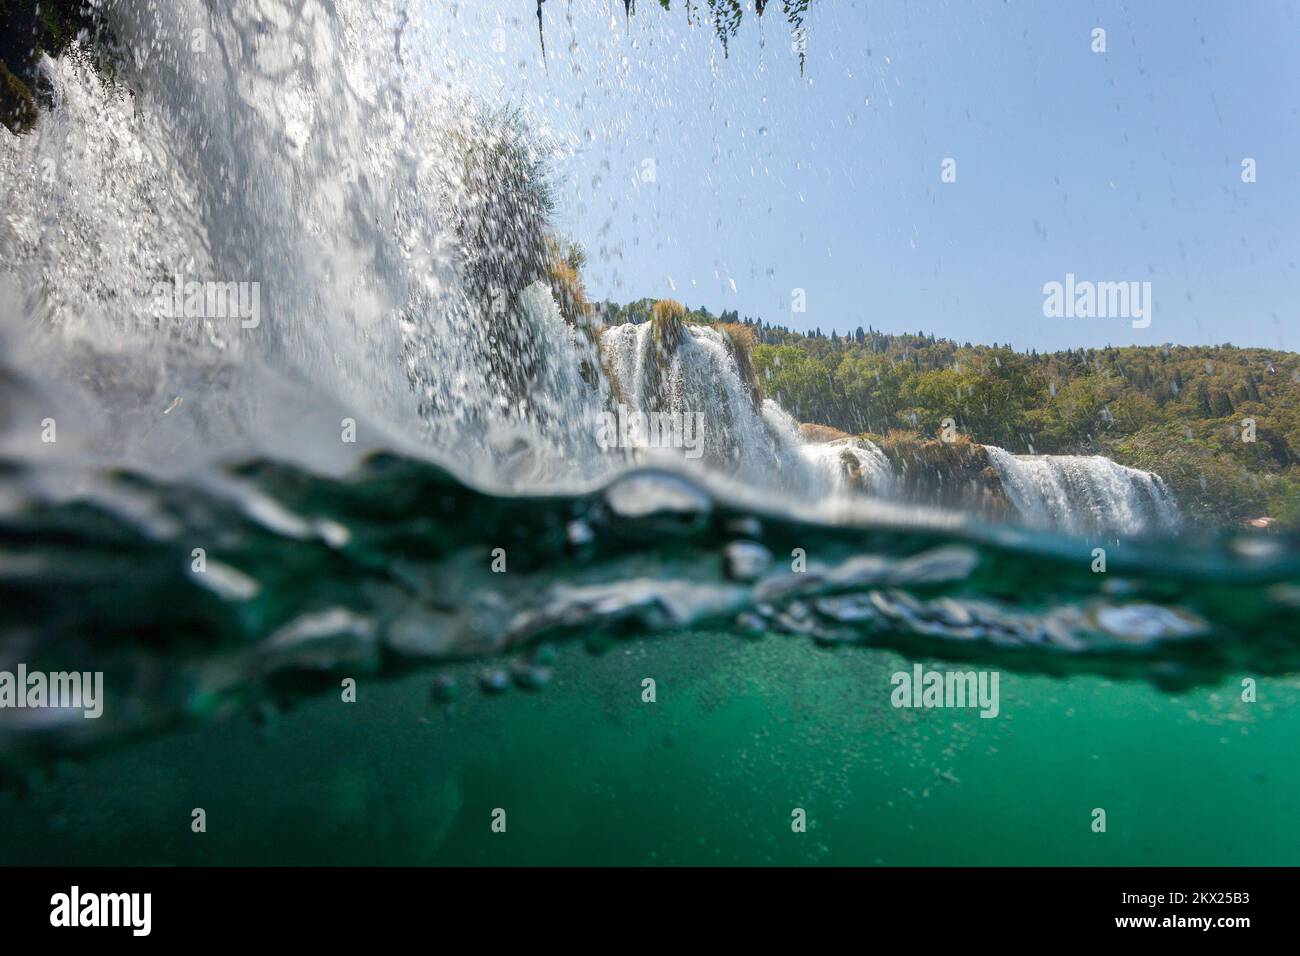 10.08.2017., Skradinski buk, Croazia - la cascata Skradinski buk, la più lunga sul fiume Krka, è una delle bellezze naturali più conosciute della Croazia. Riprese subacquee. Foto: Goran Safarek/HaloPix/PIXSELL Foto Stock